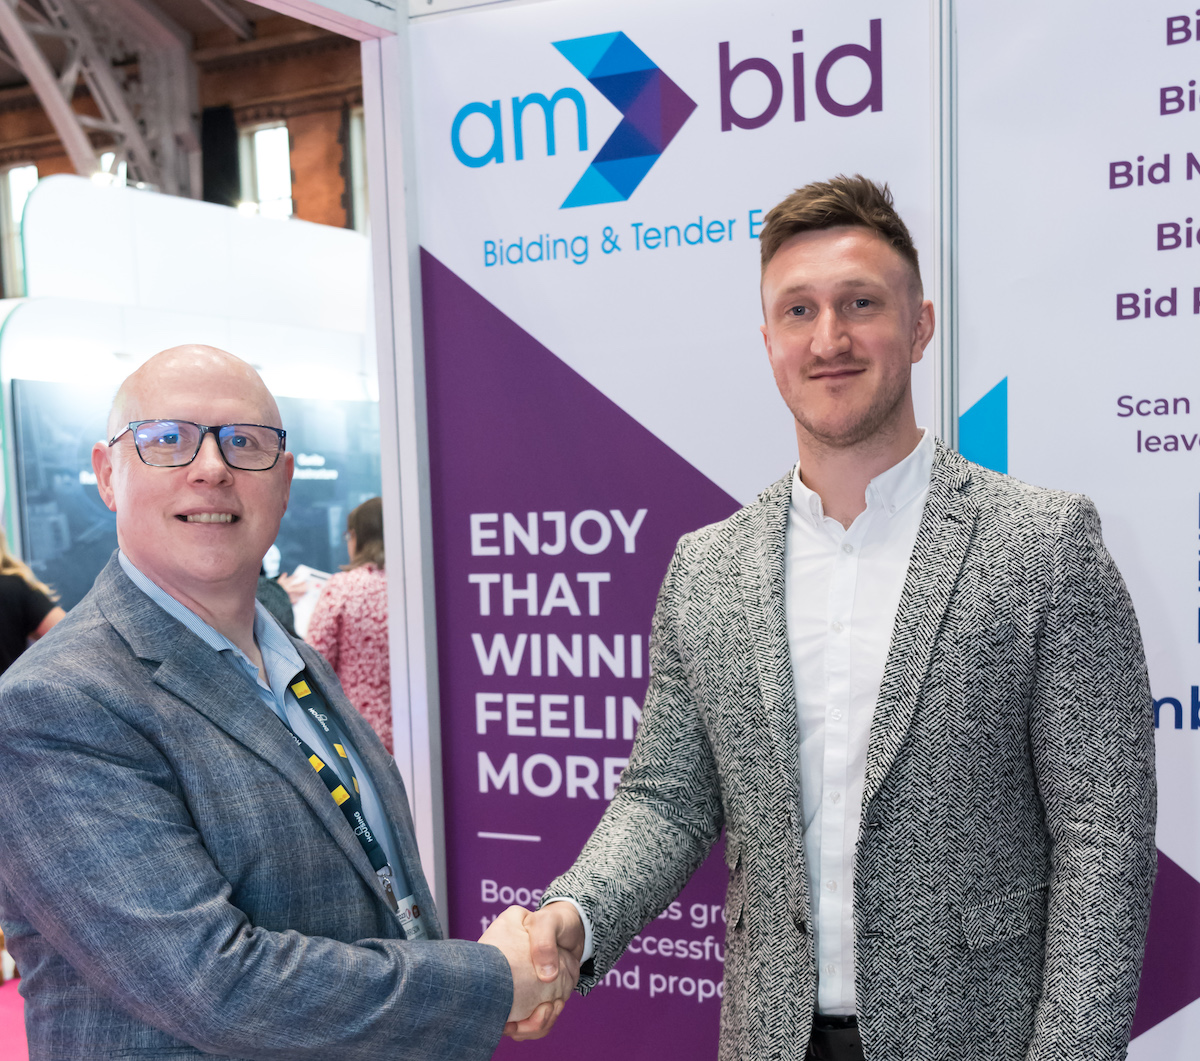 Bidding Limited acquires Edinburgh-based AM Bid